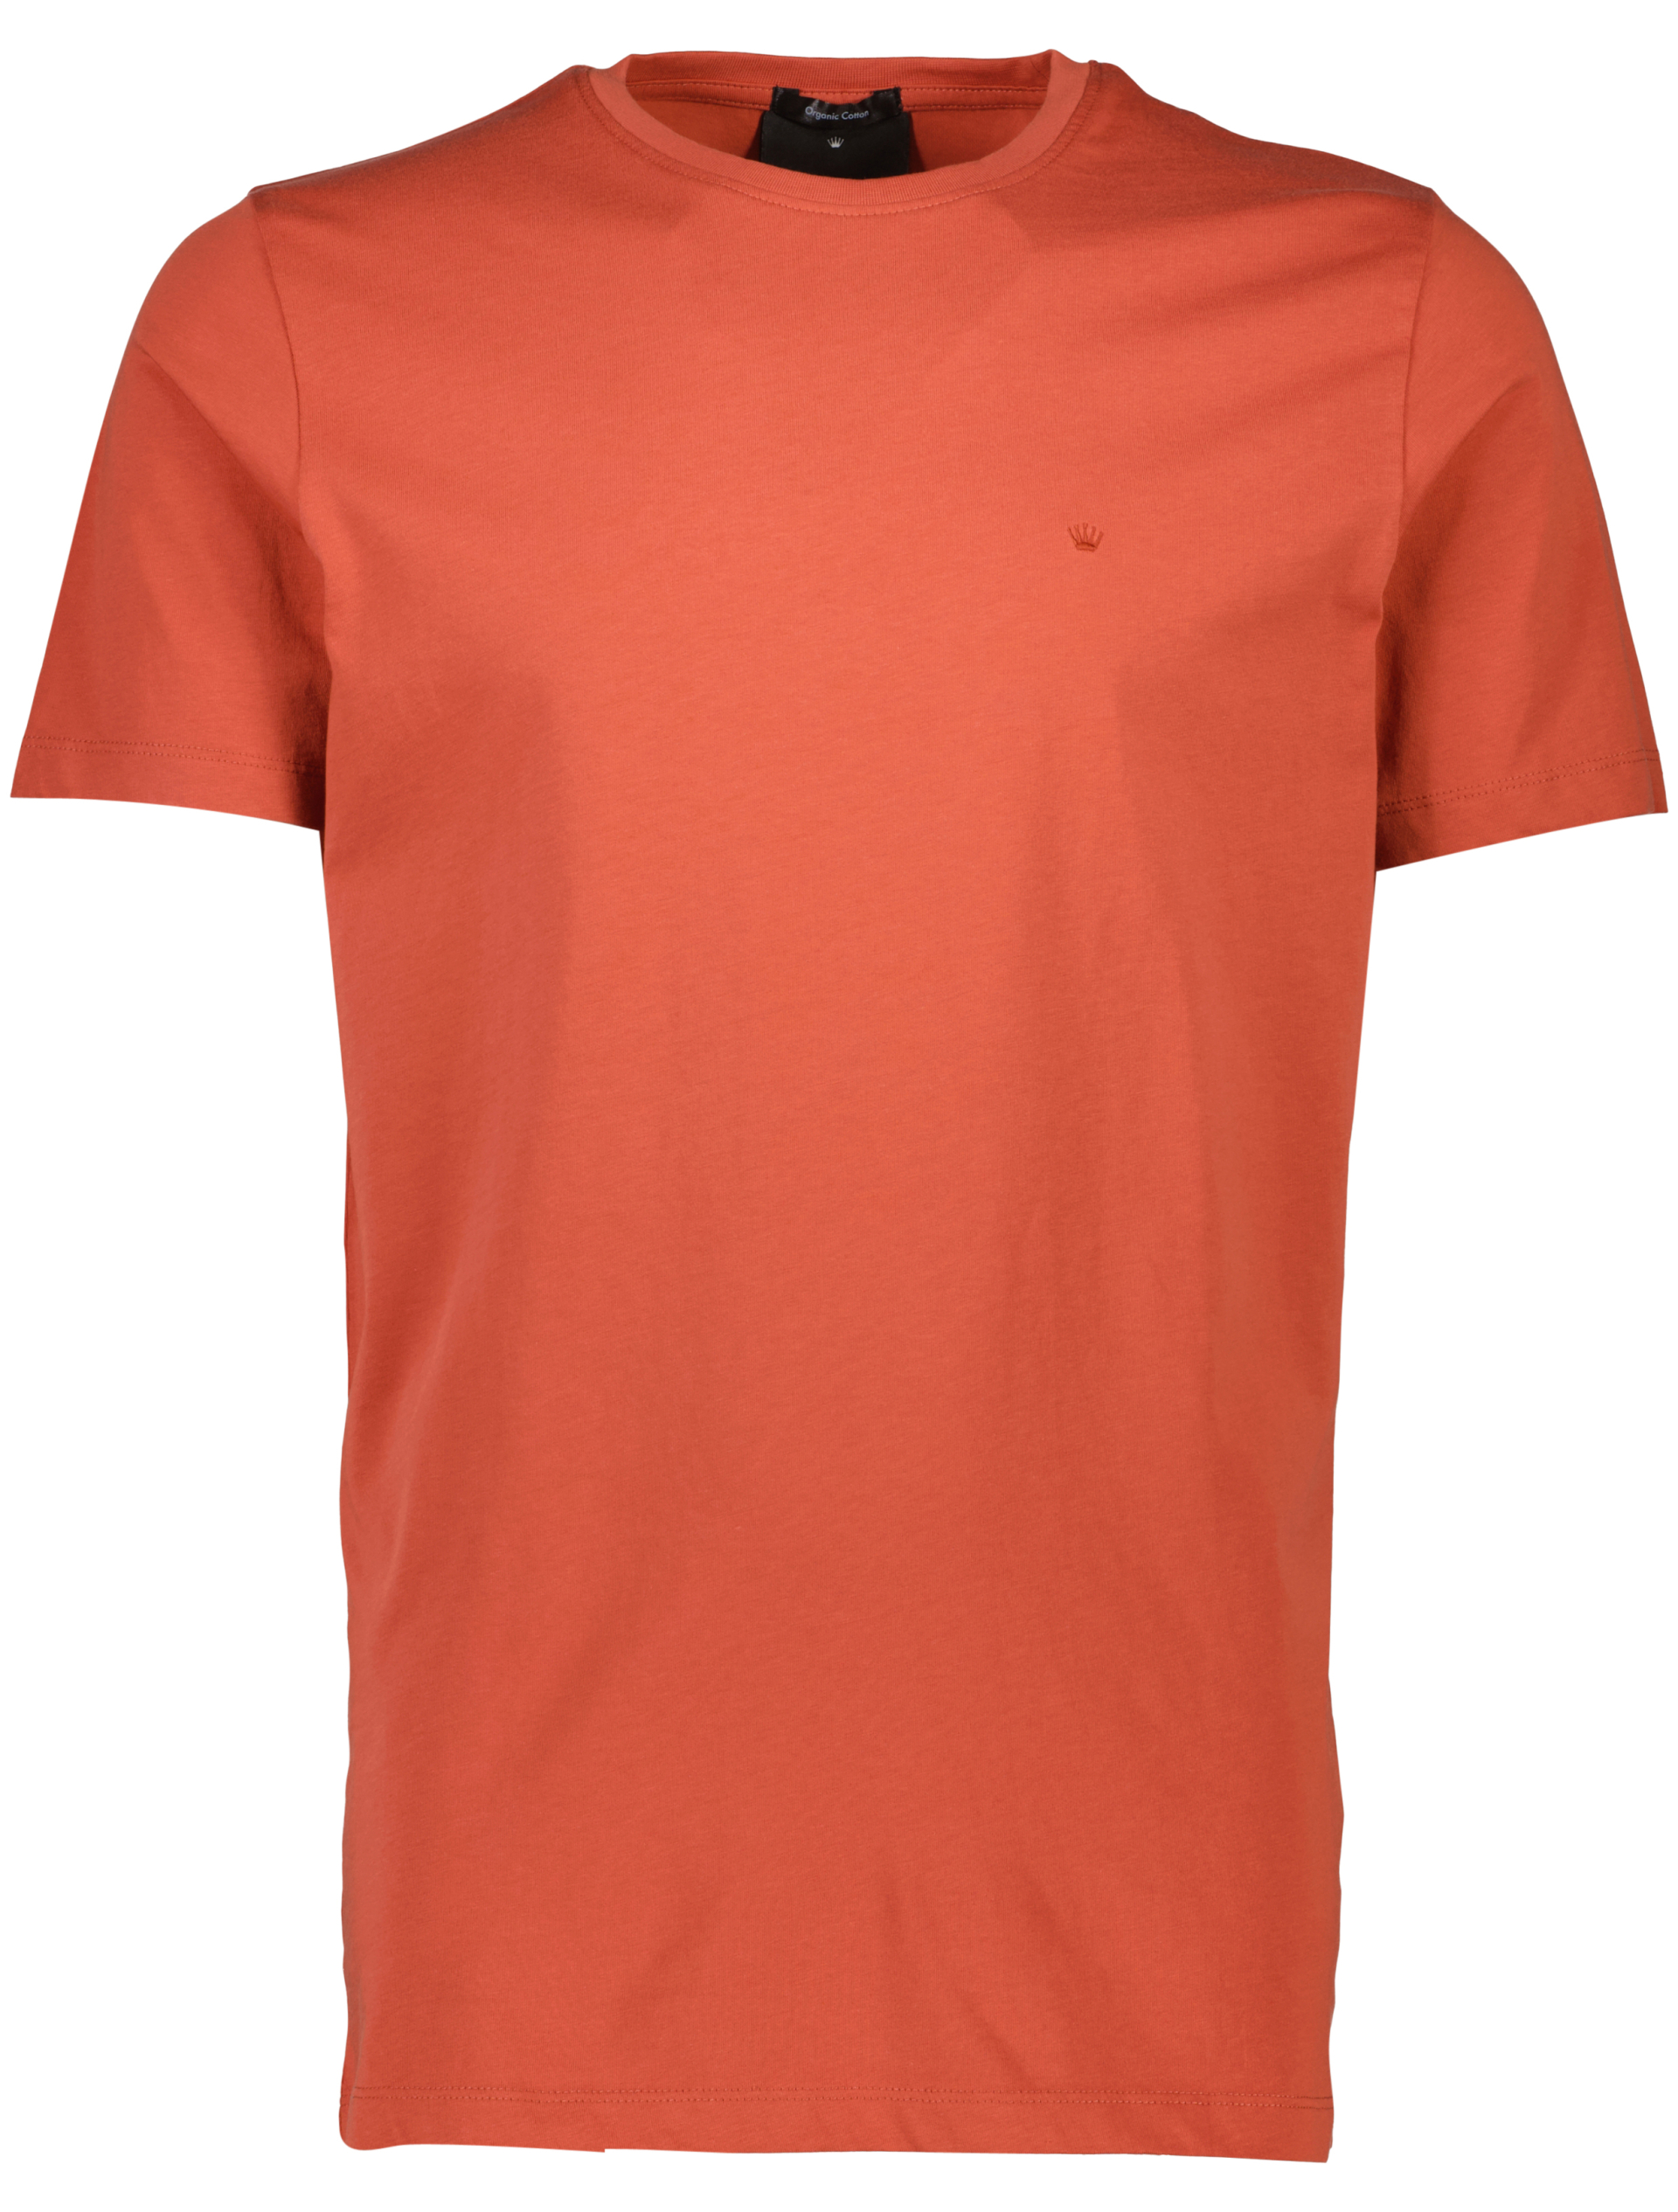 Junk de Luxe T-shirt orange / dk burnt orange